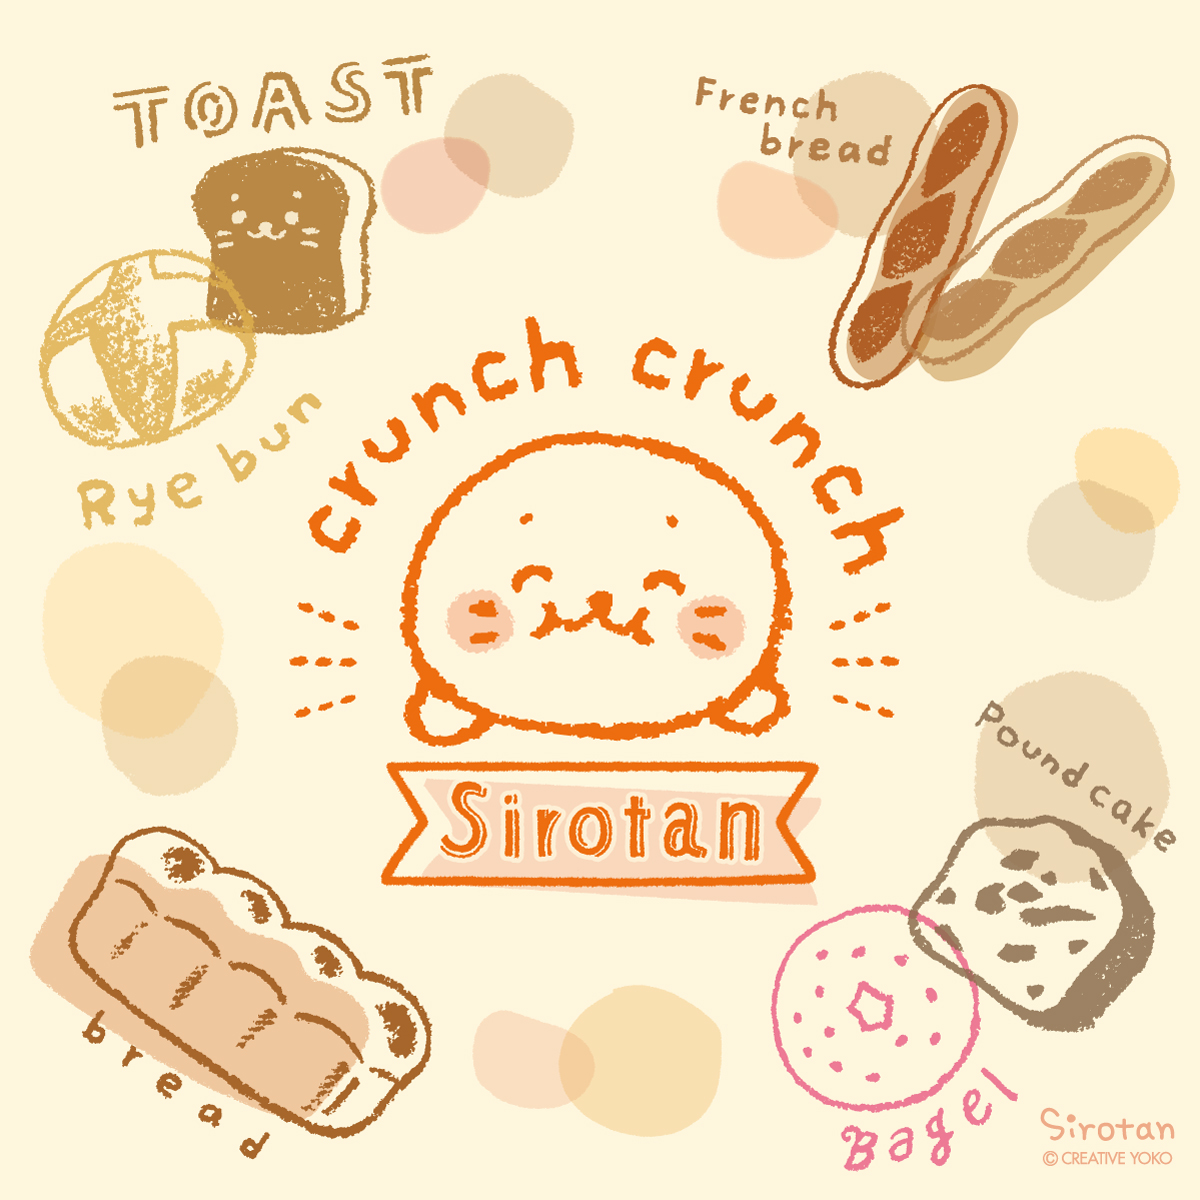 🍞毎月12日は #パンの日 🍞  しろたんはたくさんのパンに囲まれてうれしそう!  (=・ω・=)「ふわふわのパンにカリカリのパン・・・ みんなはどんなパンがすきかな～?」  #今日は何の日 #今日のらくがき #パンの日 #パン #食パン #トースト #フランスパン #ライ麦パン #ベーグル #パウンドケーキ